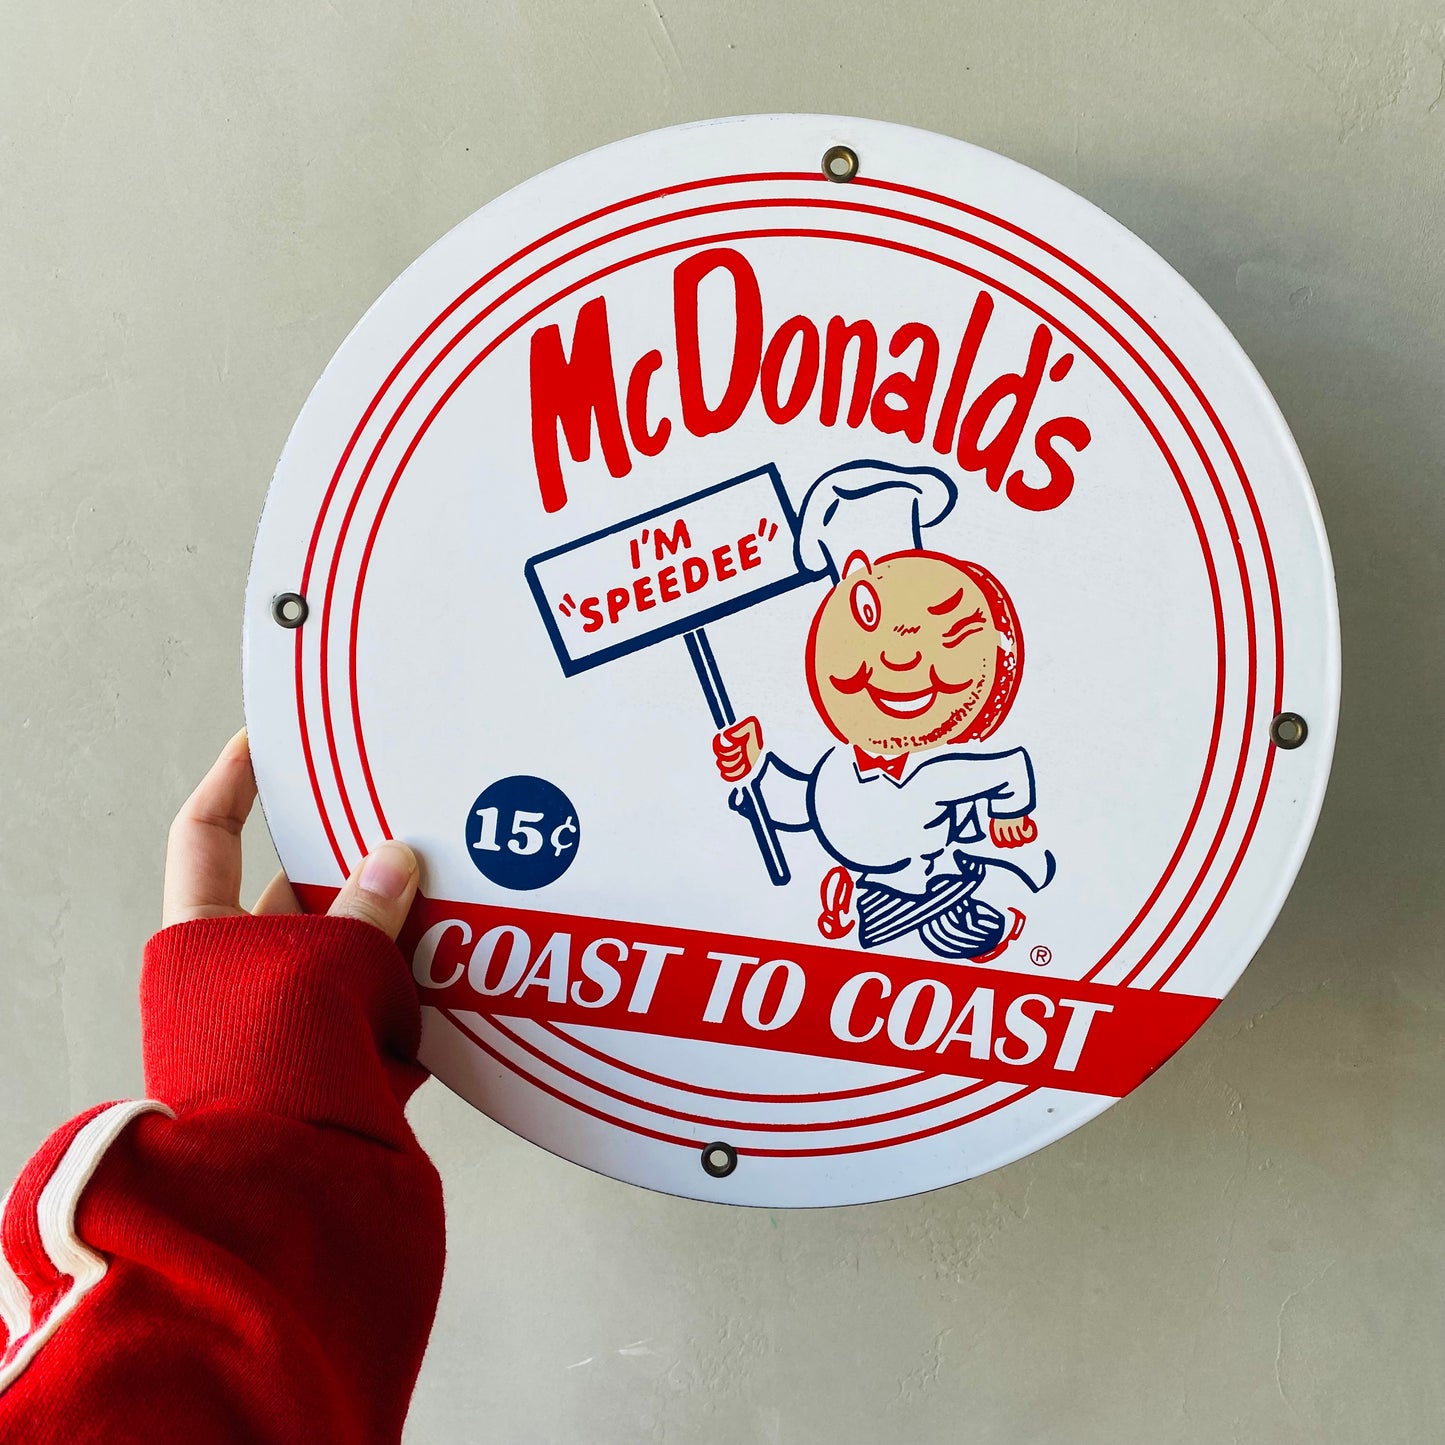 【USA】McDonald hamburger sign